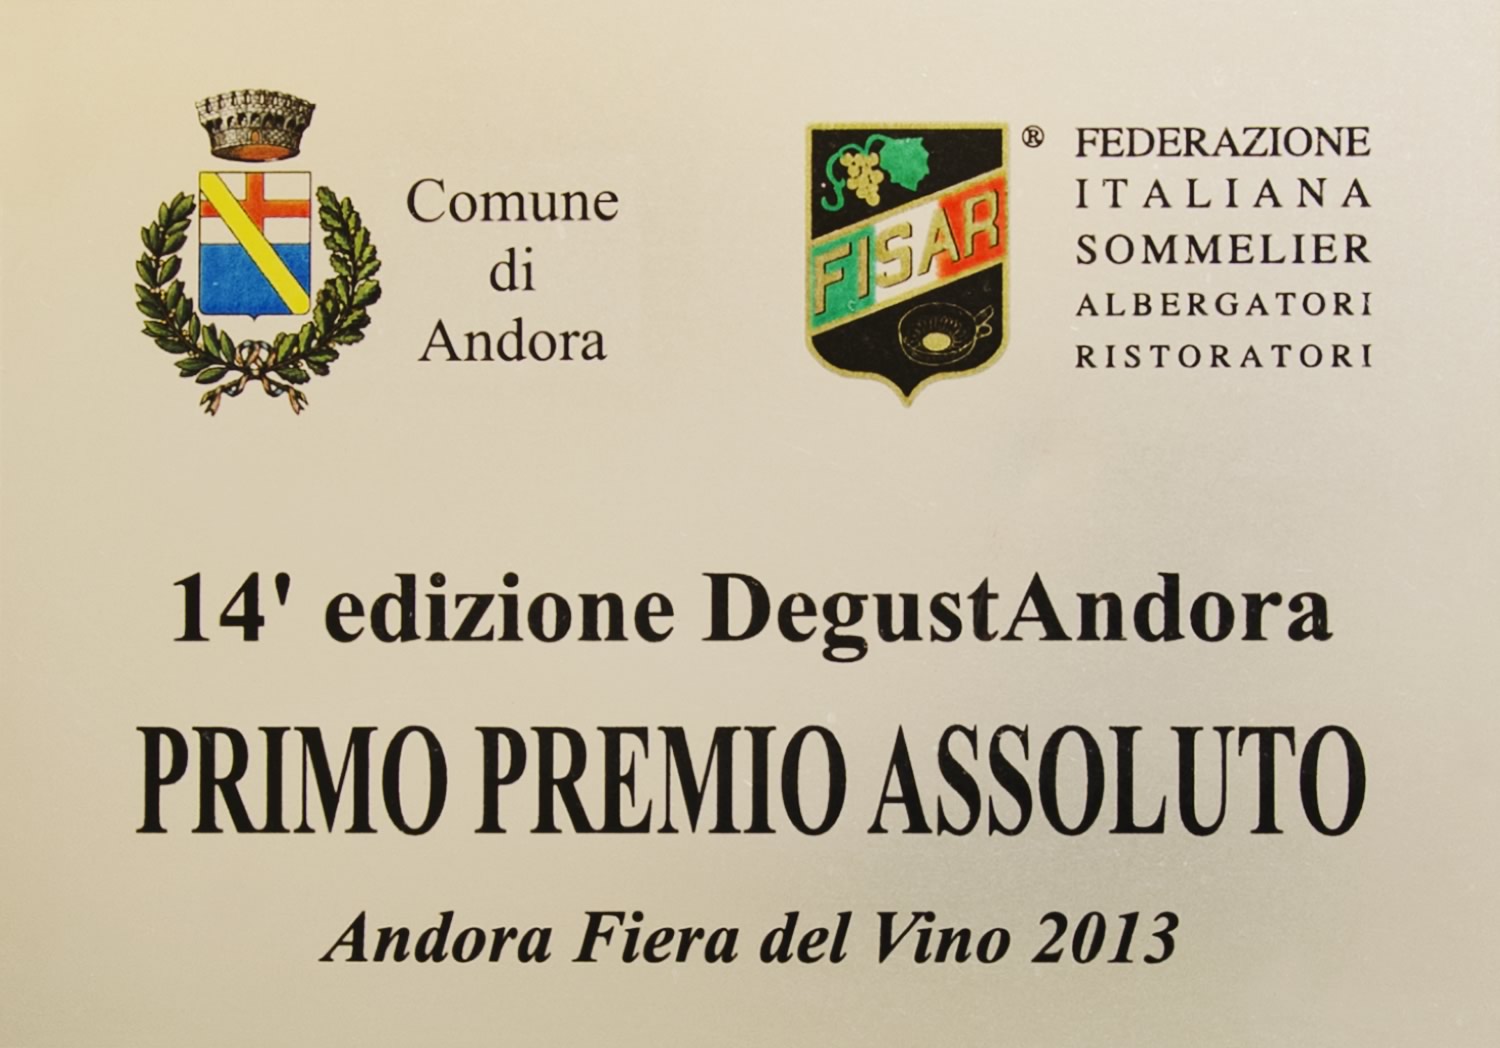 Pimo Premio Assoluto - Andora Fiera del Vino 2013.